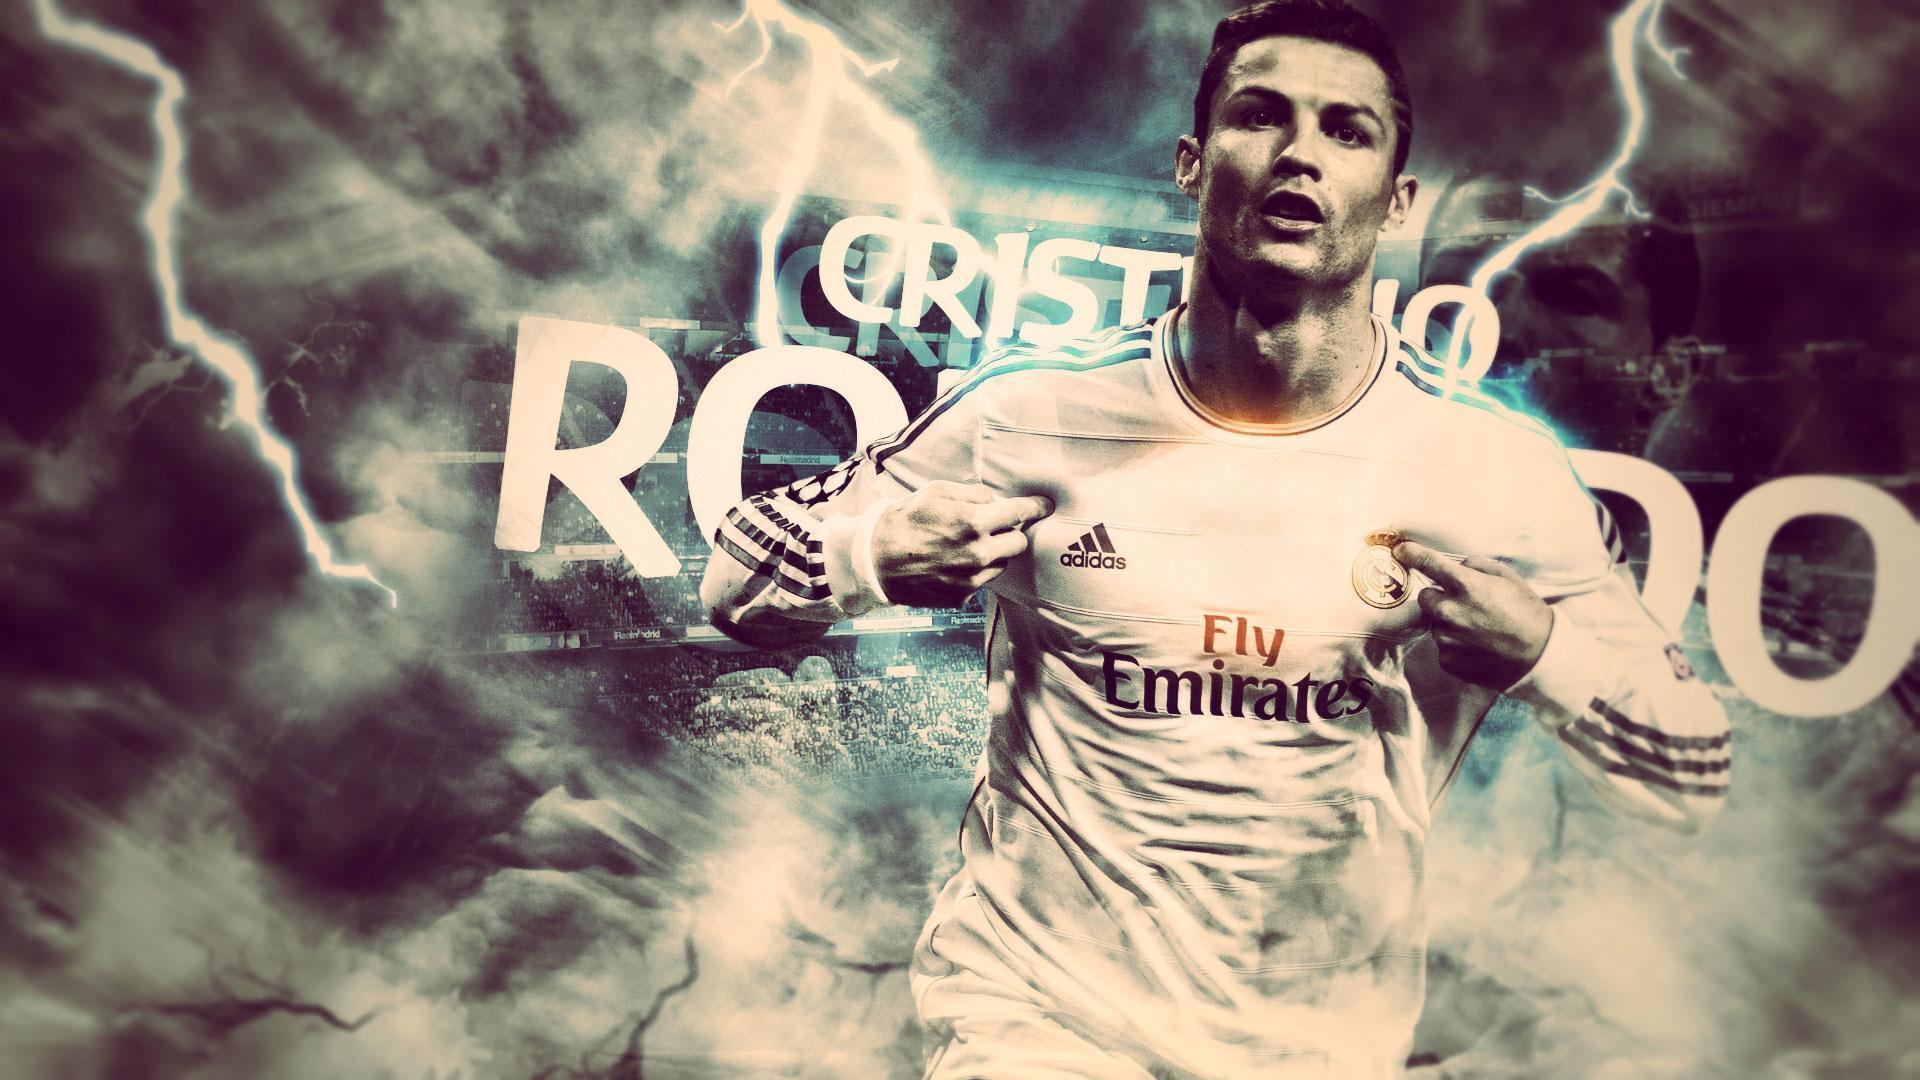 Cristiano Ronaldo Cr7 2014 Wallpaper Wide Or HD Male Celebrities